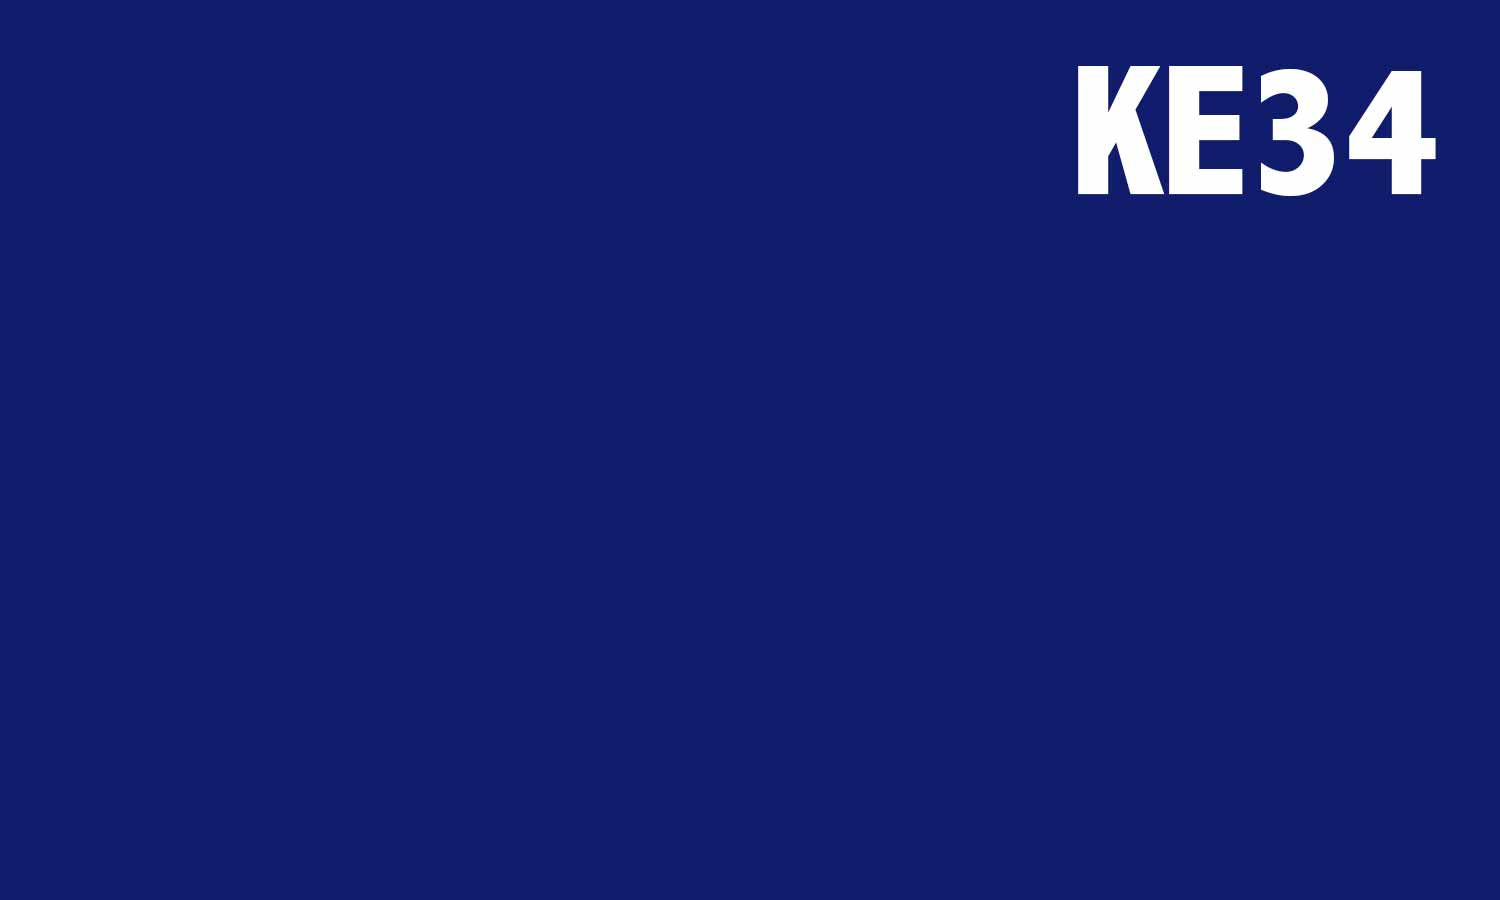 Folija za namještaj, samoljepljiva - Ultramarin plava - KE34